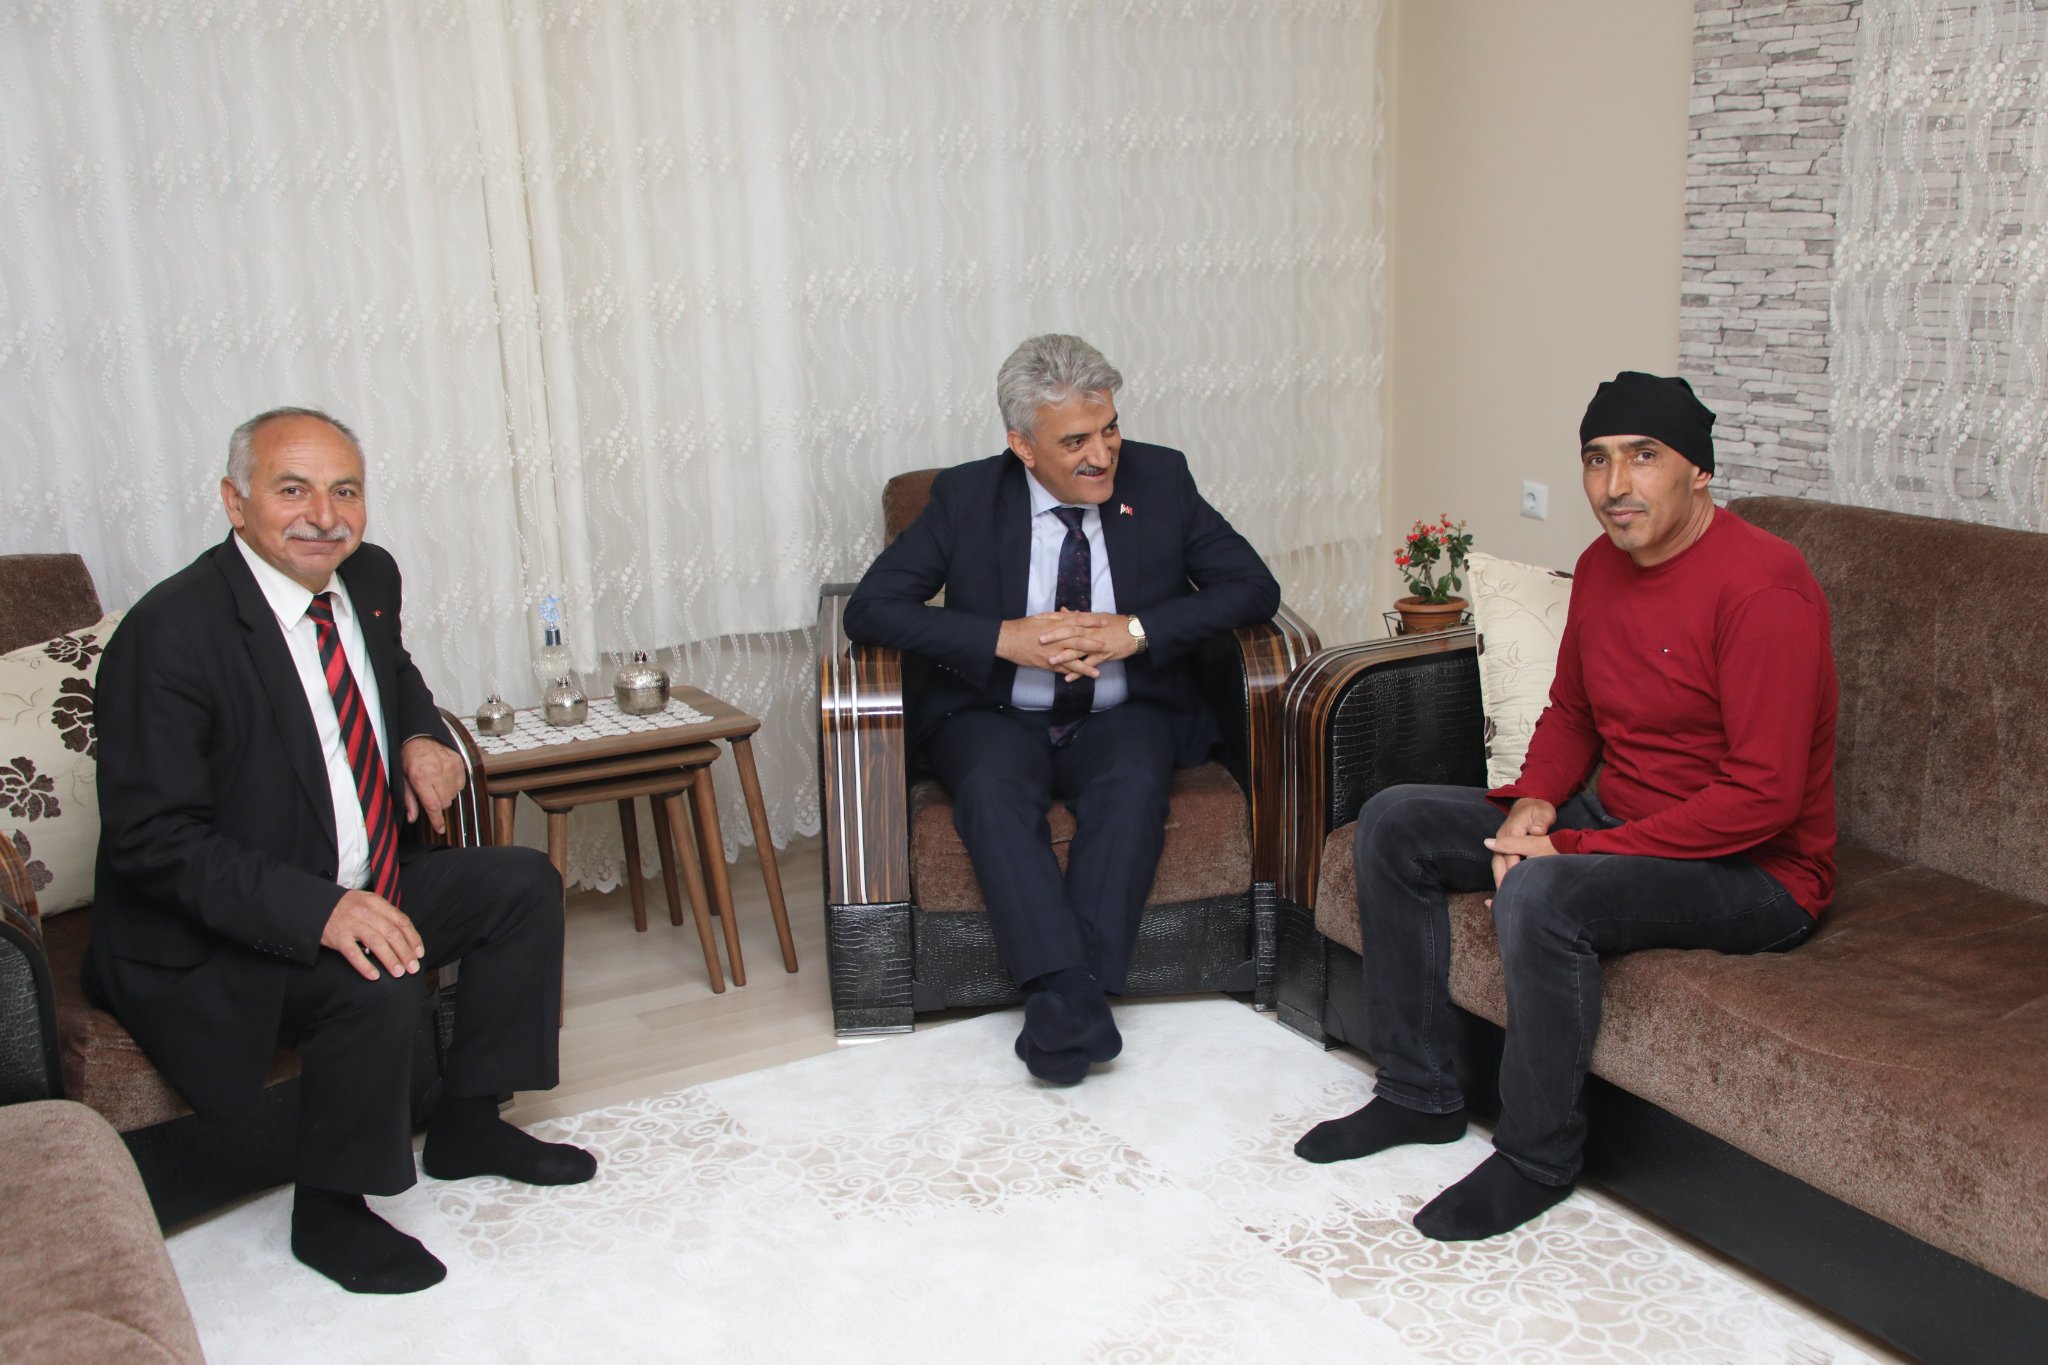 Sayın Erzincan Valisi Mehmet Makas, Erzincan İl Özel İdaresi Şube Müdürleri Yakup Aksu ve Hakan Çelik’e geçmiş olsun ziyaretinde bulundu.